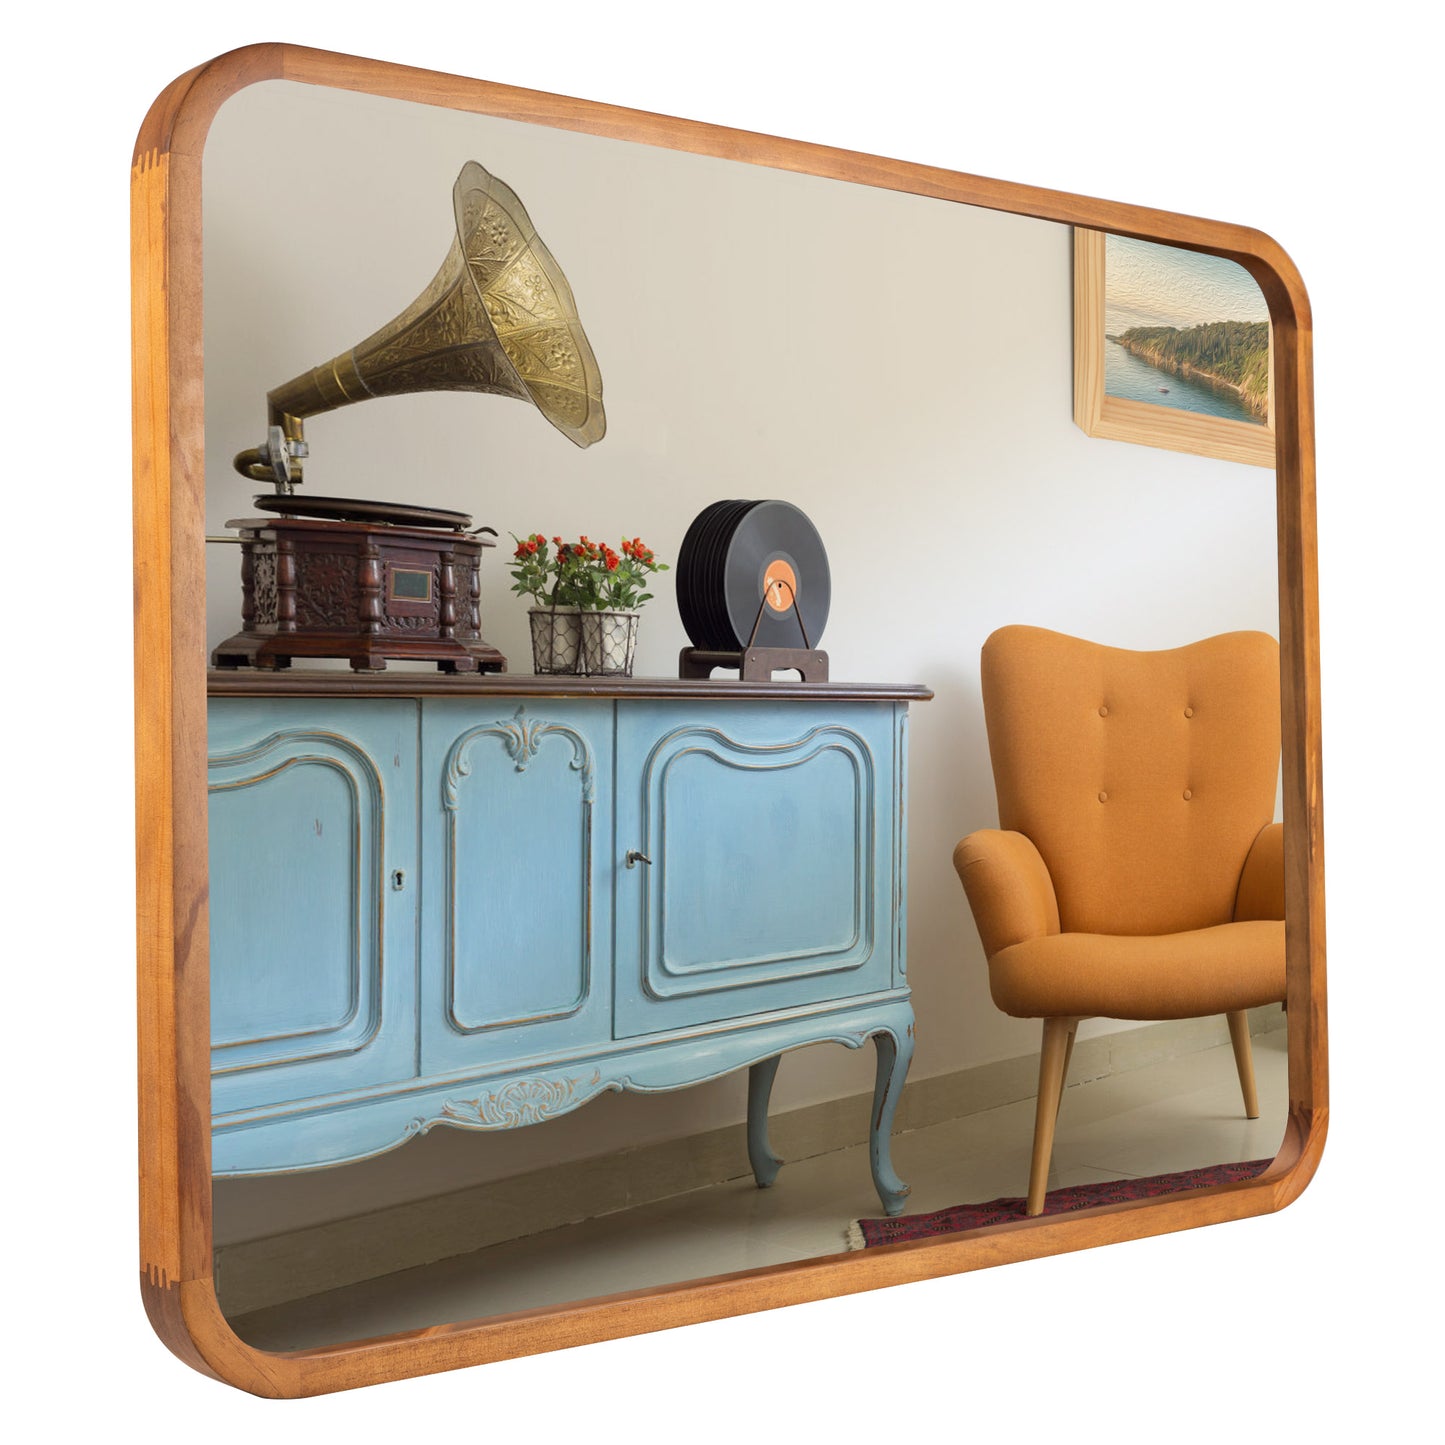 JIYUERLTD Rustikaler Eleganz-Spiegel – 83 x 63 cm, dekorativer, schicker Spiegel, Vintage-Wandspiegel mit Holzrahmen für Badezimmer, Wohnzimmer und Eingangsbereich